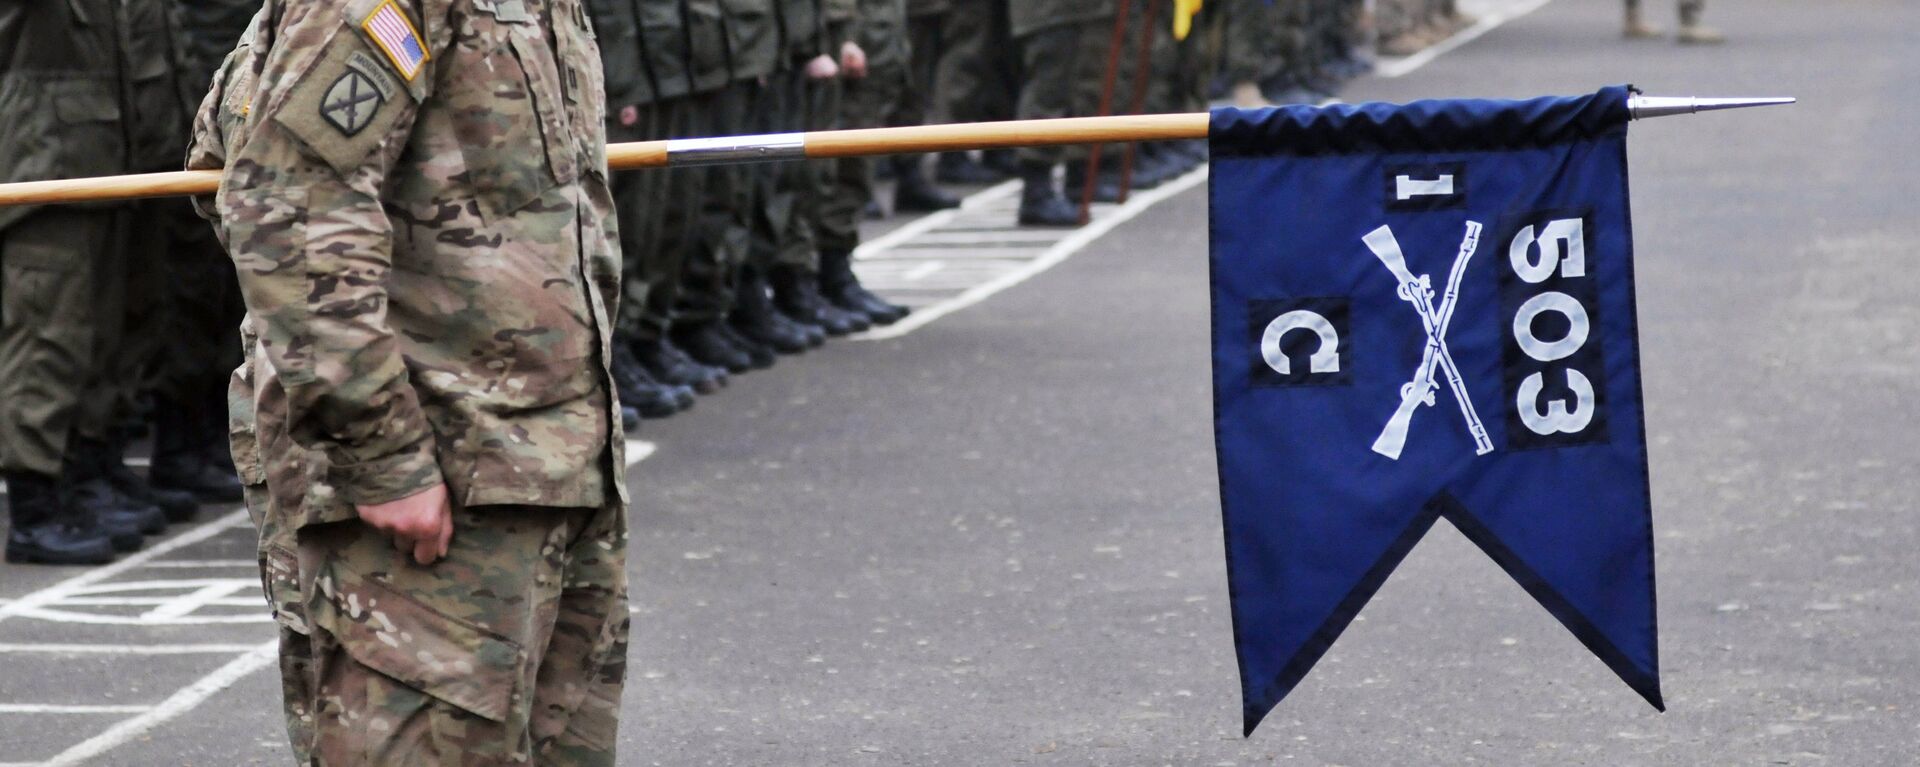 'Korkusuz Gardiyan' adlı tatbikat kapsamında Amerikan askerleri, Lviv'de Ukrayna Ulusal Tugayı'na bağlı birlikleri eğitiyor. - Sputnik Türkiye, 1920, 04.04.2021